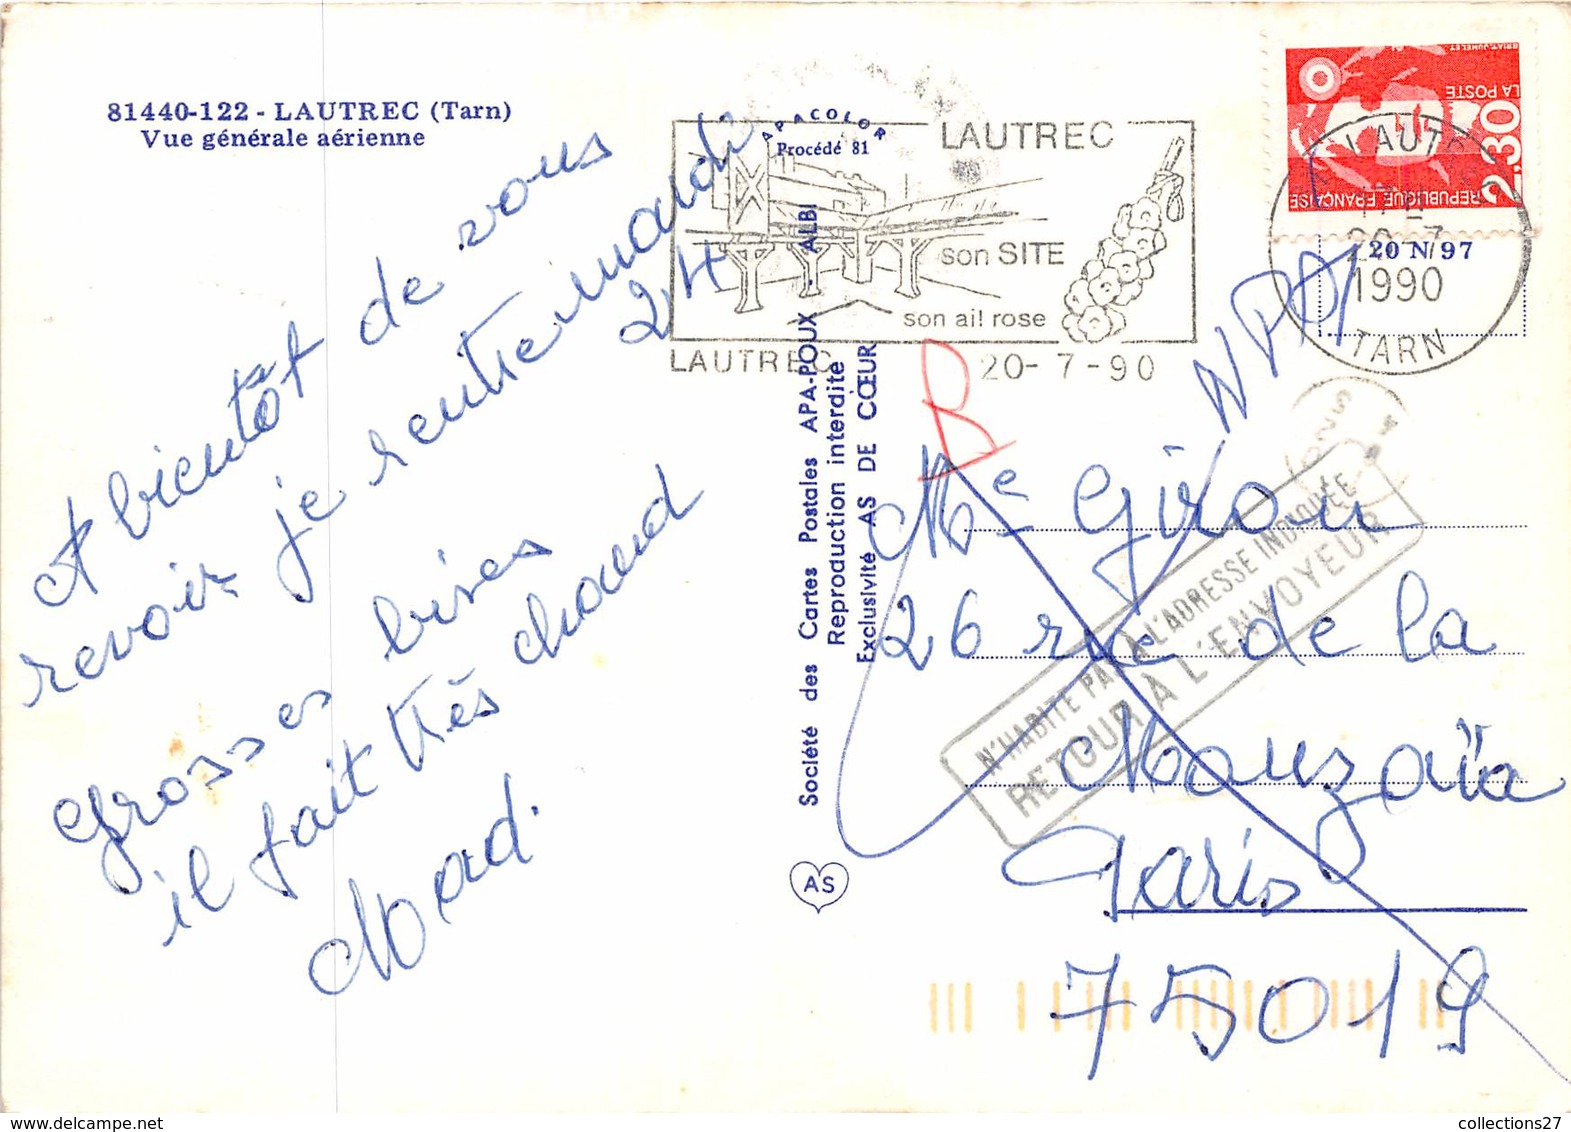 81-LAUTREC- VUE GENERALE AERIENNE - Lautrec